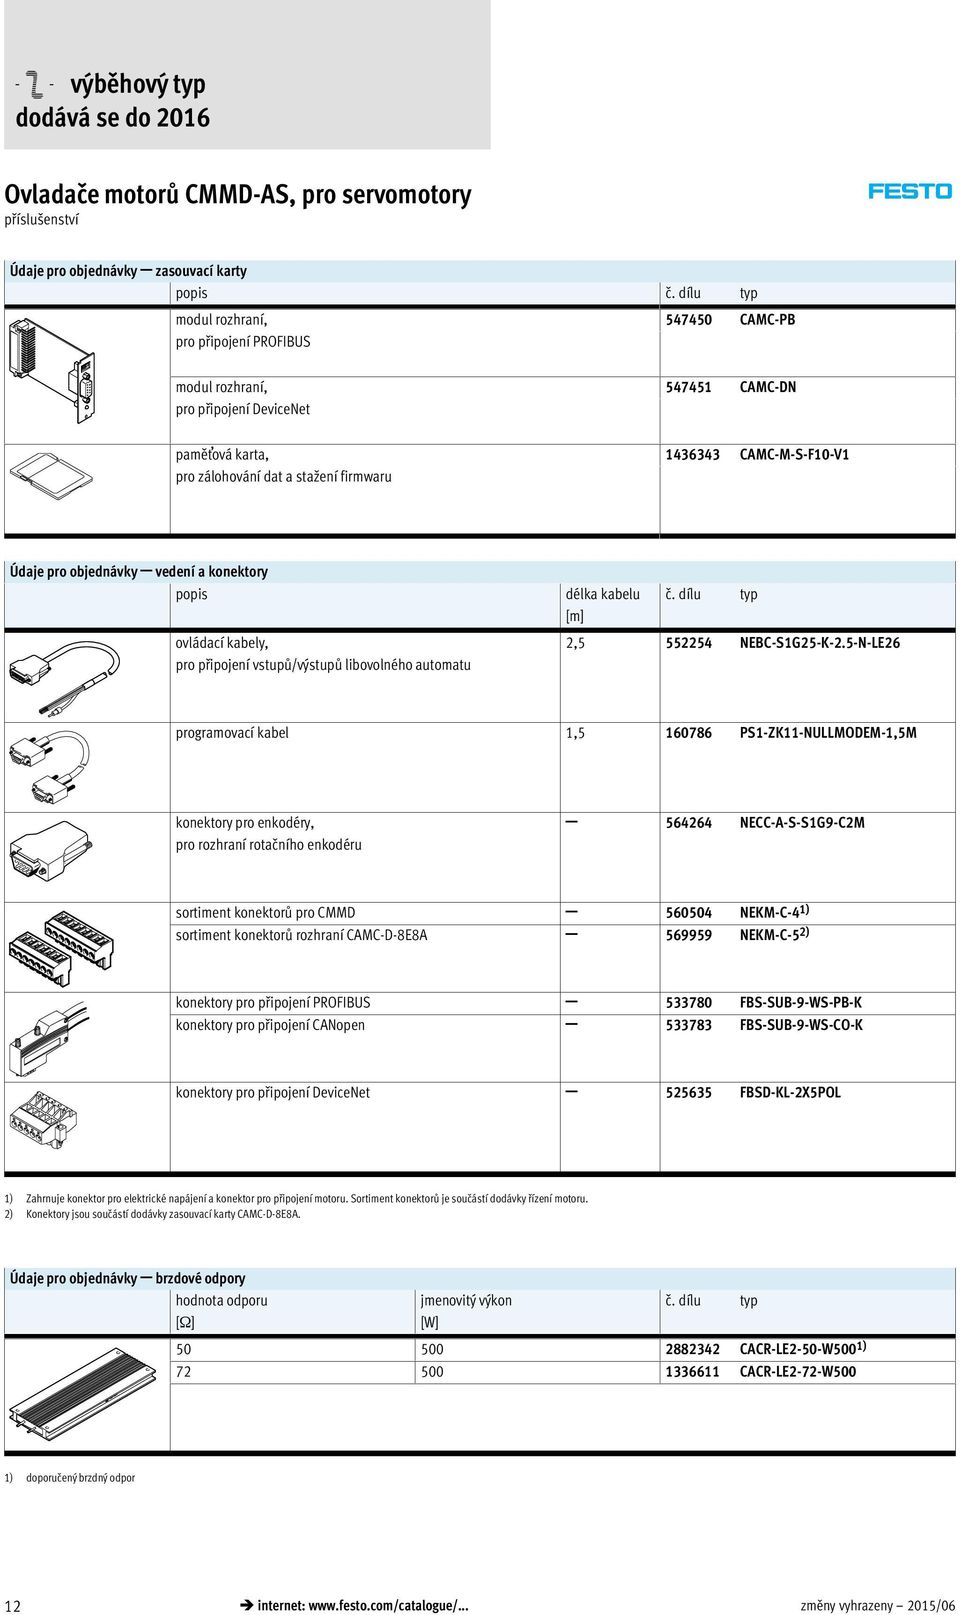 Údaje pro objednávky vedení a konektory popis ovládací kabely, pro připojení vstupů/výstupů libovolného automatu délka kabelu č. dílu typ [m] 2,5 552254 NEBC-S1G25-K-2.